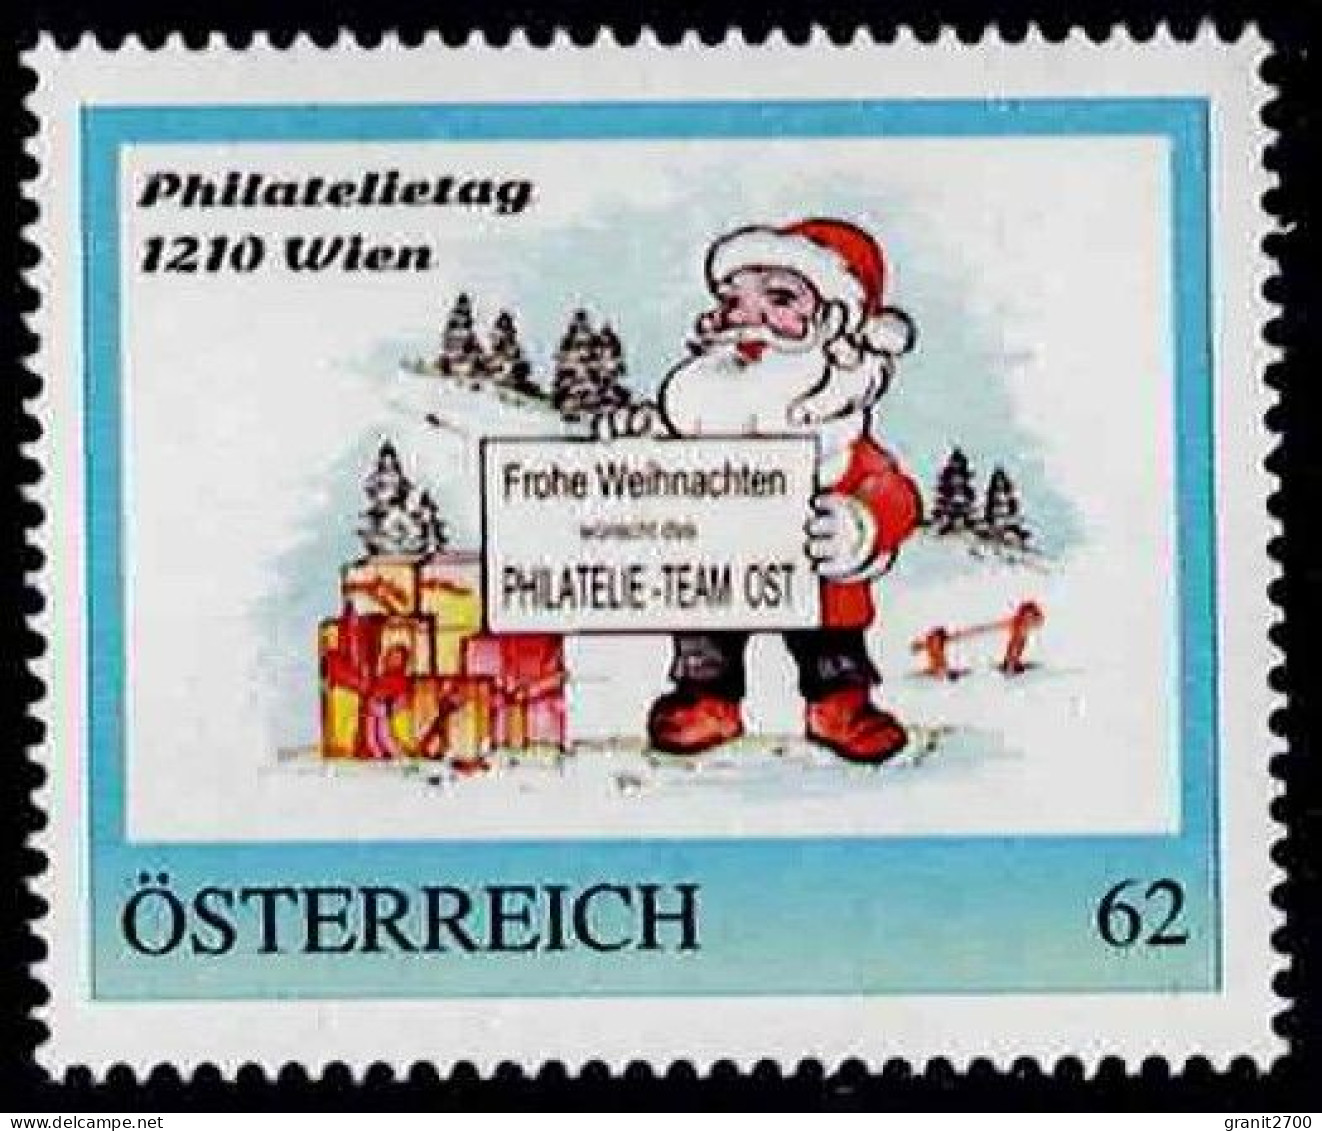 PM Philatelietag 1210 Wien - Frohe Weihnacht  Ex Bogen Nr. 8112488  Vom 18.12.2014  Postfrisch - Timbres Personnalisés